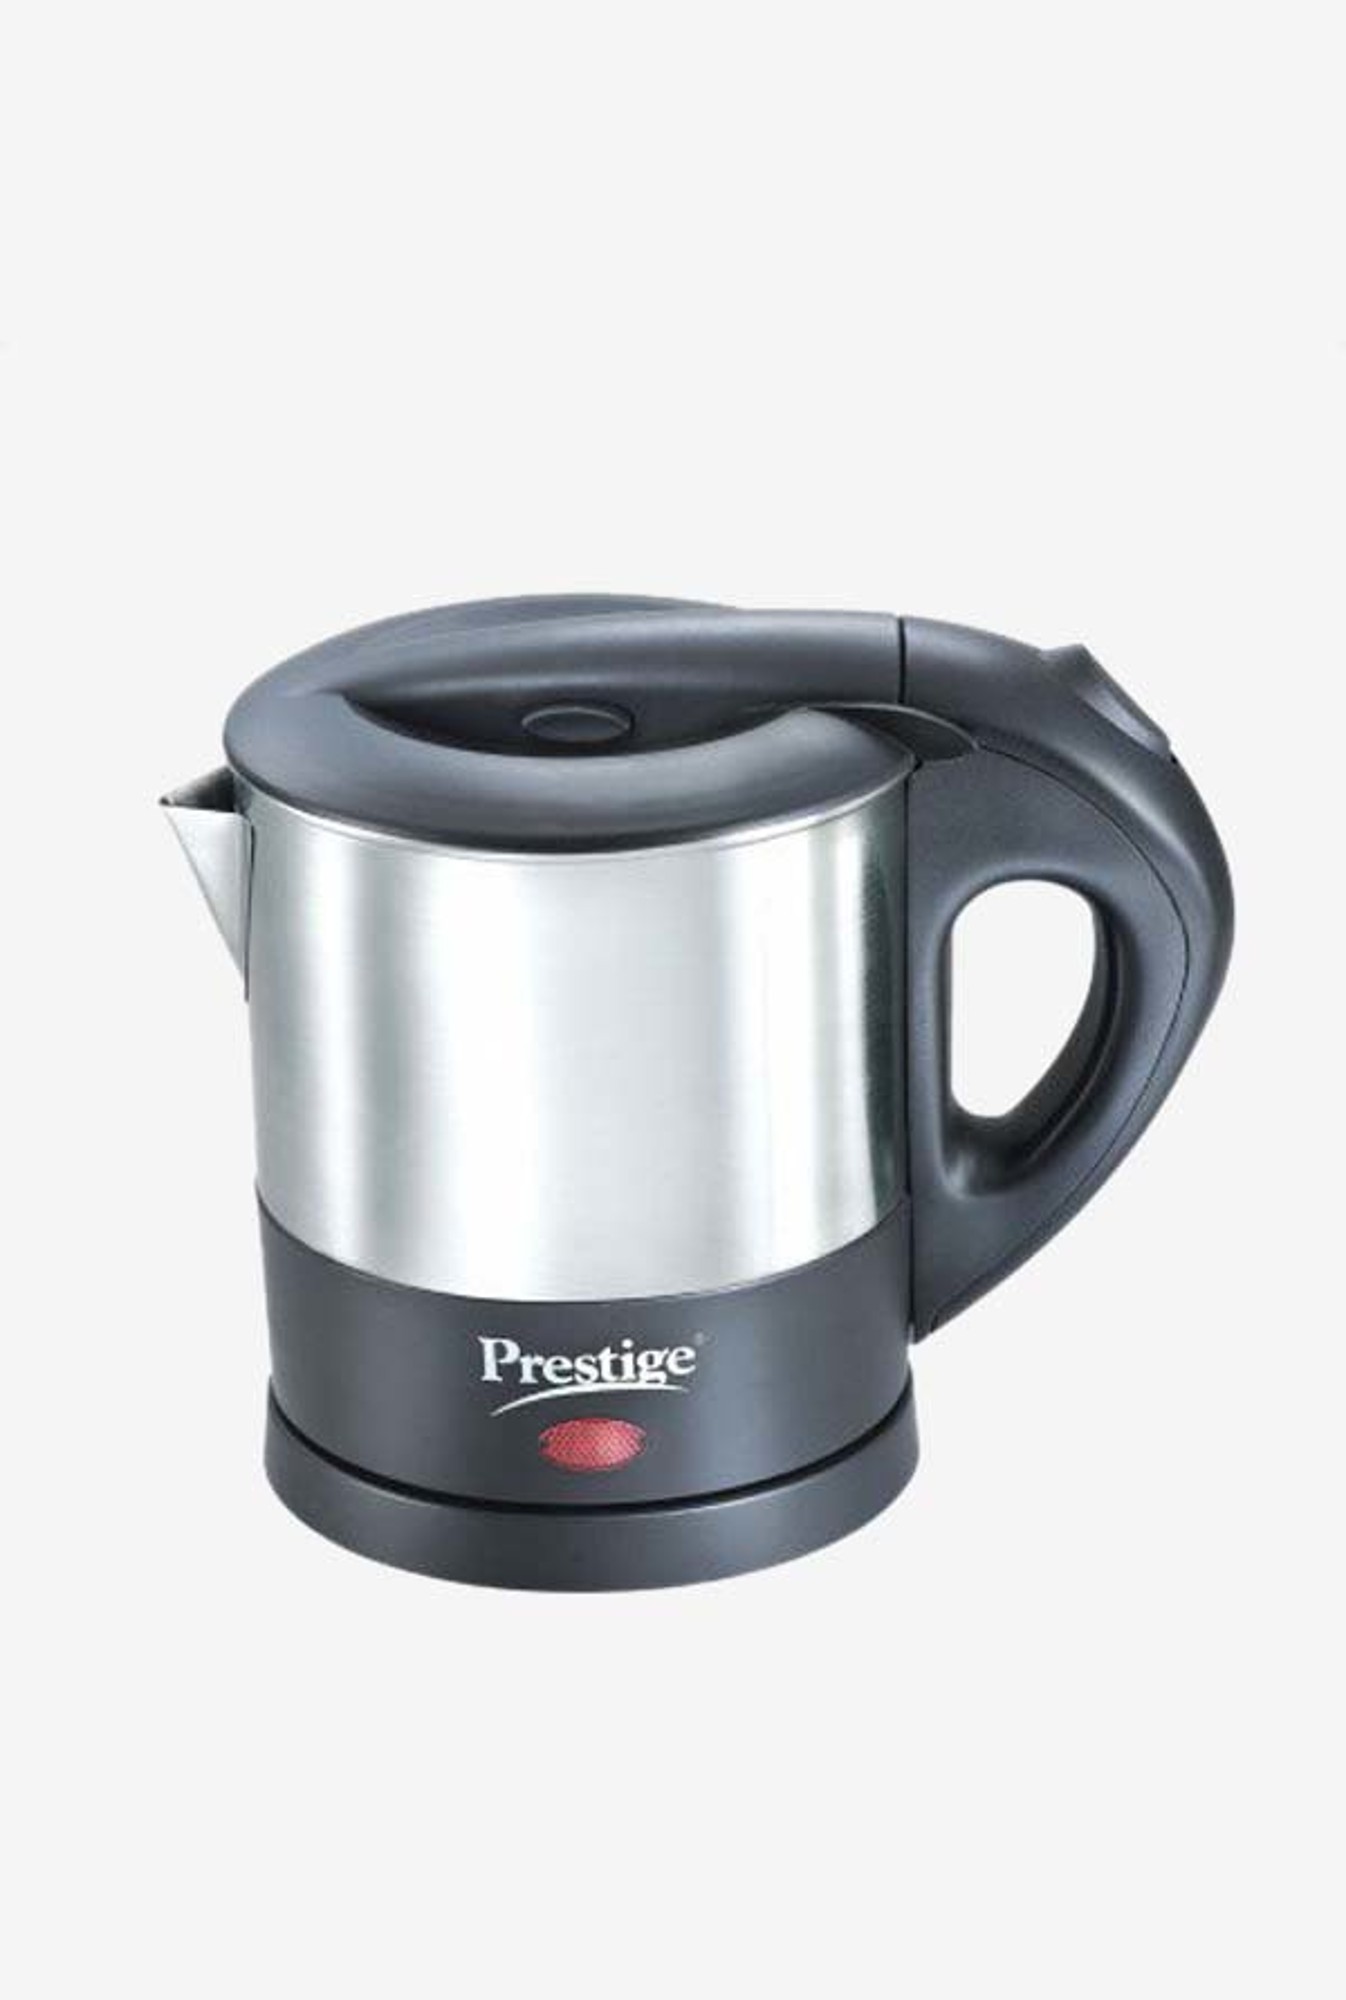 prestige multi kettle